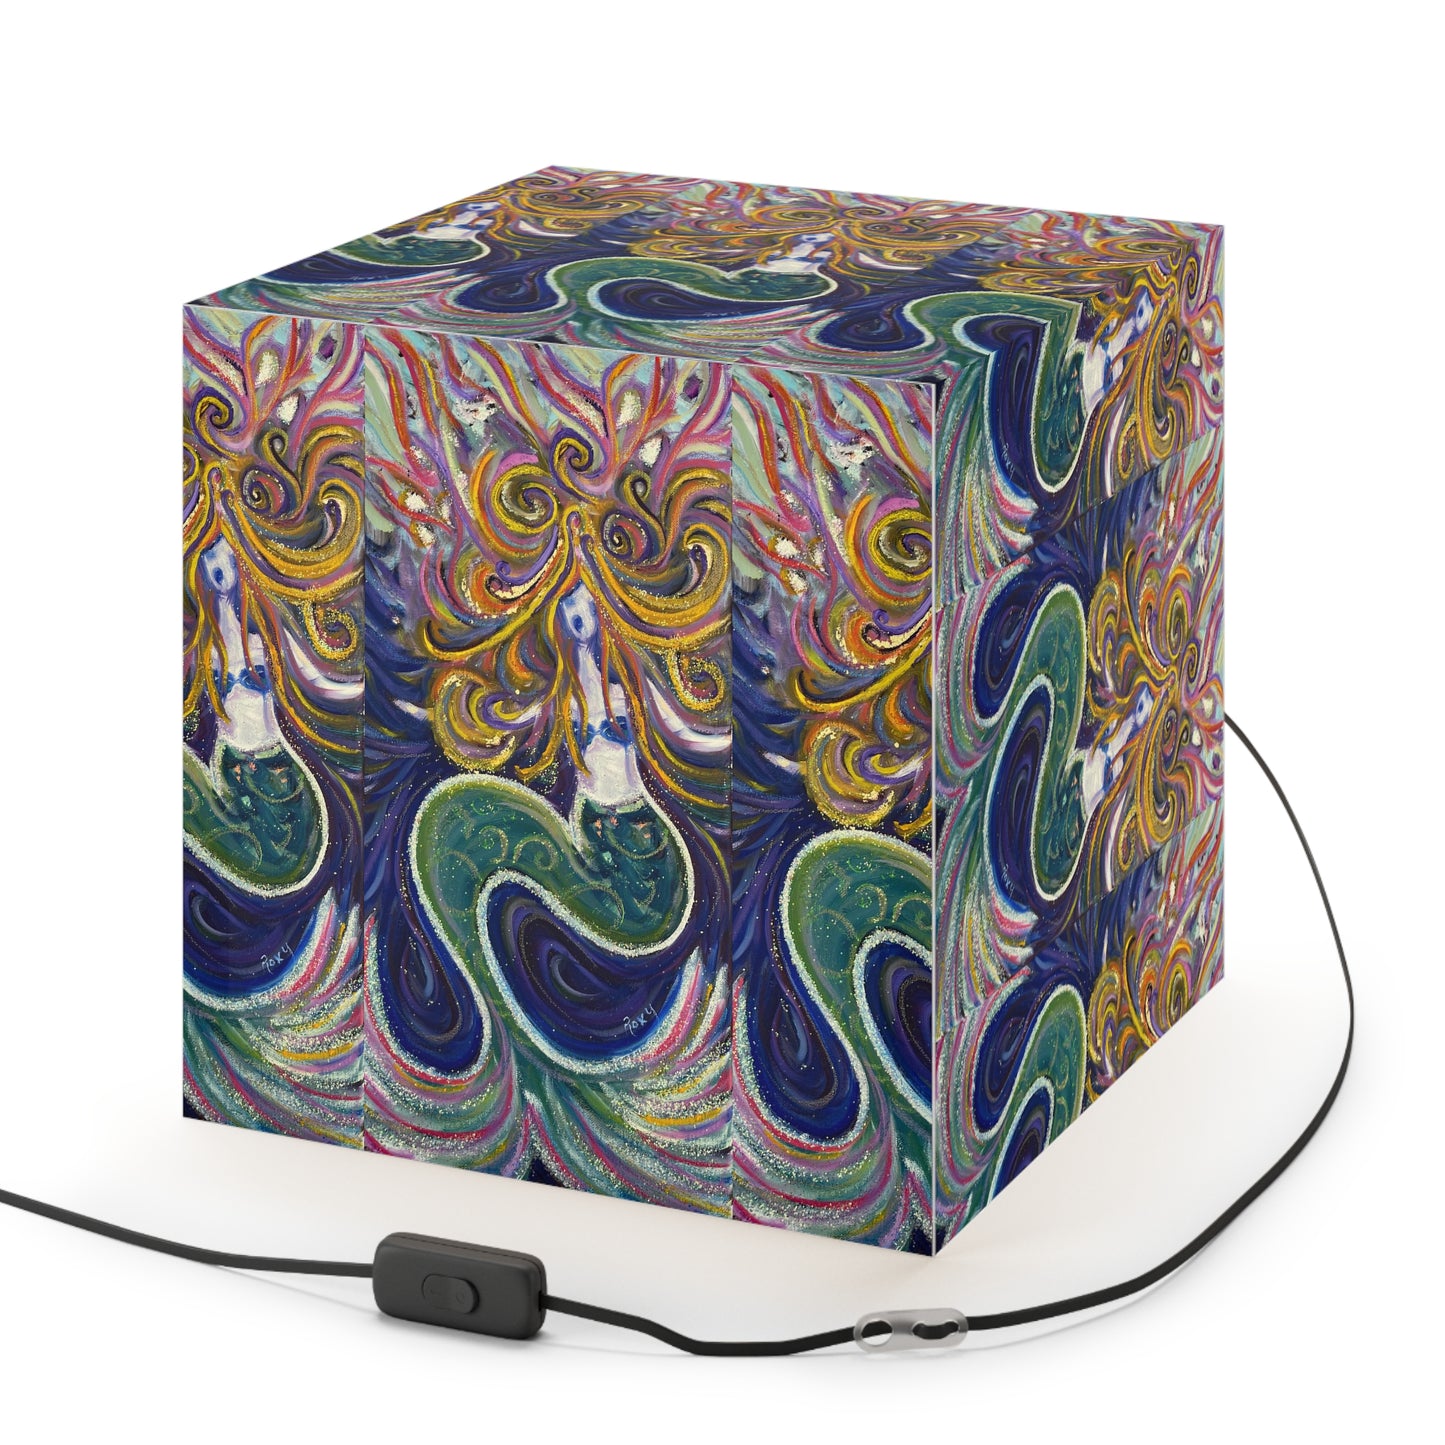 Mermaid Cube Lamp